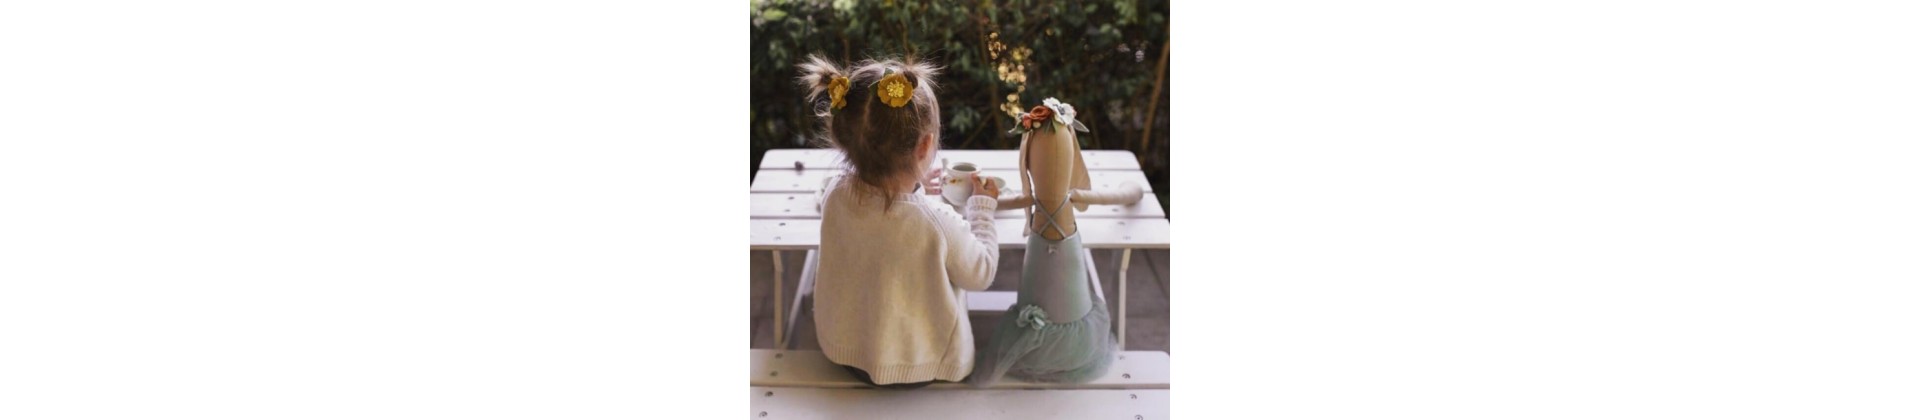 Cadeaux fille 2 ans, 3 ans, 4 ans : idées cadeaux originales pour petite fille